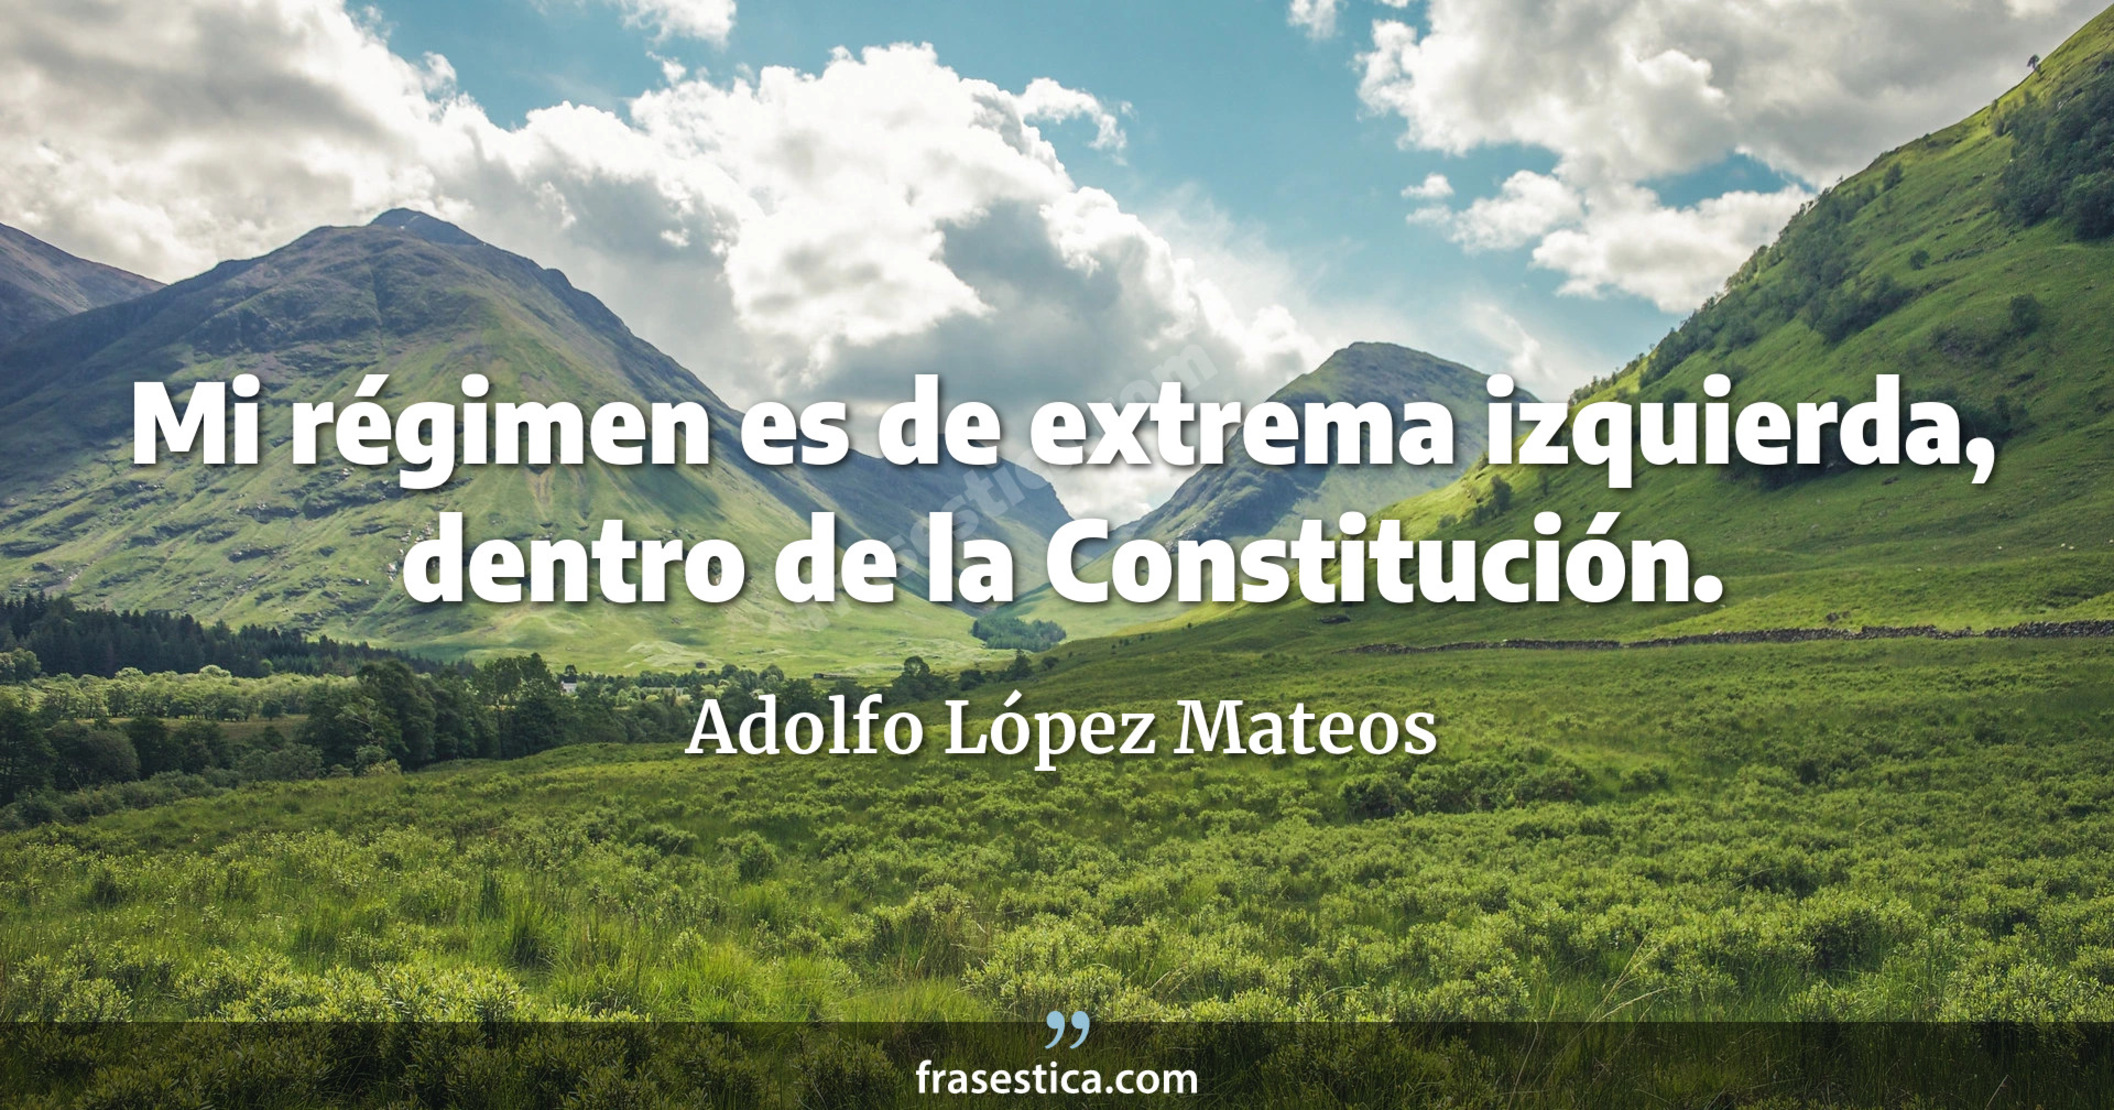 Mi régimen es de extrema izquierda, dentro de la Constitución. - Adolfo López Mateos